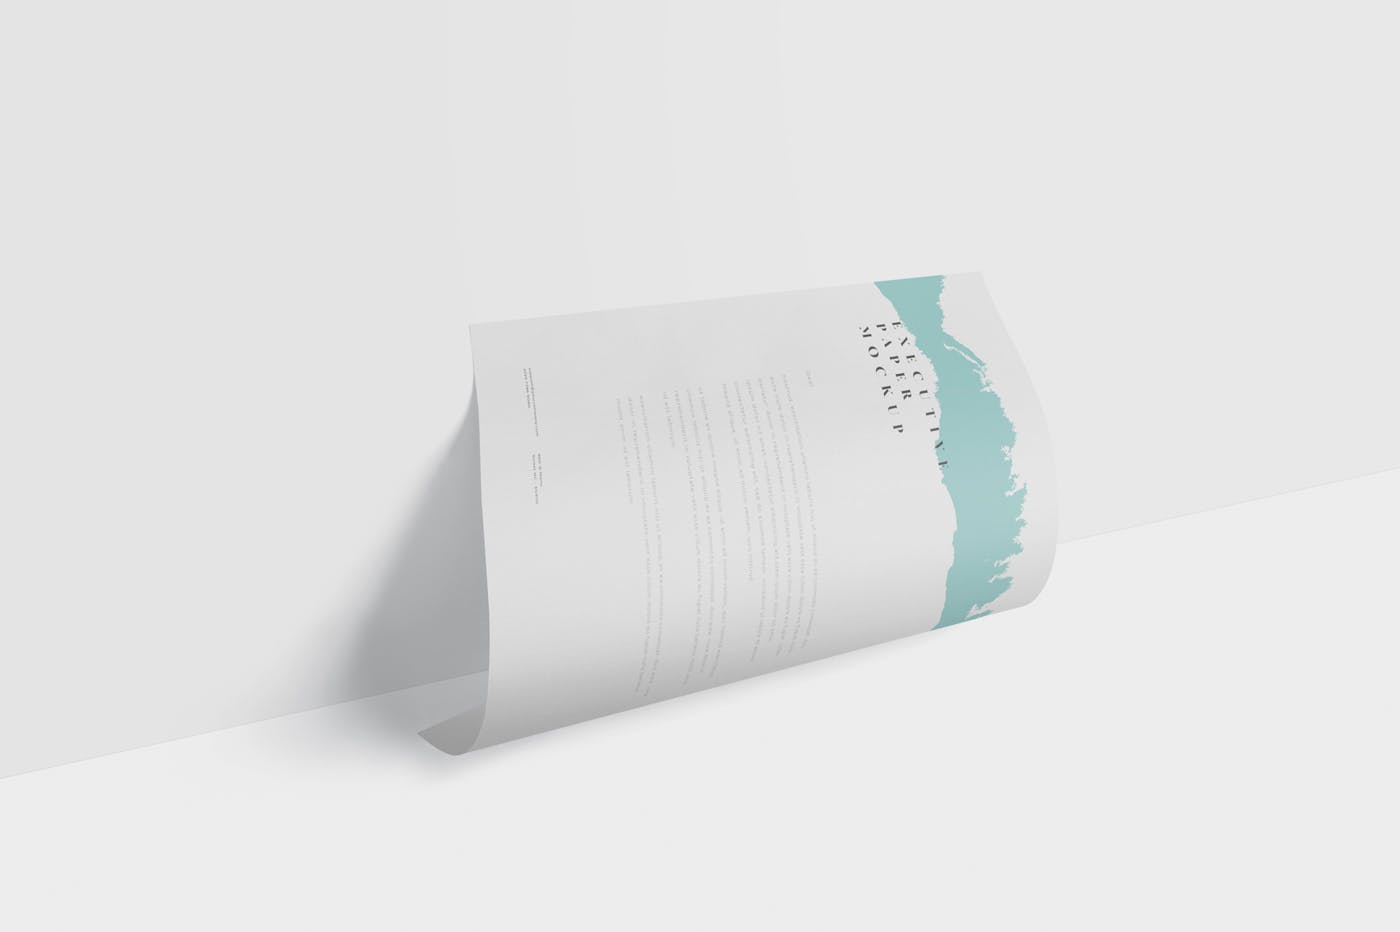 企业宣传单张设计效果图样机蚂蚁素材精选 Executive Paper Mockup – 7×10 Inch Size插图(4)